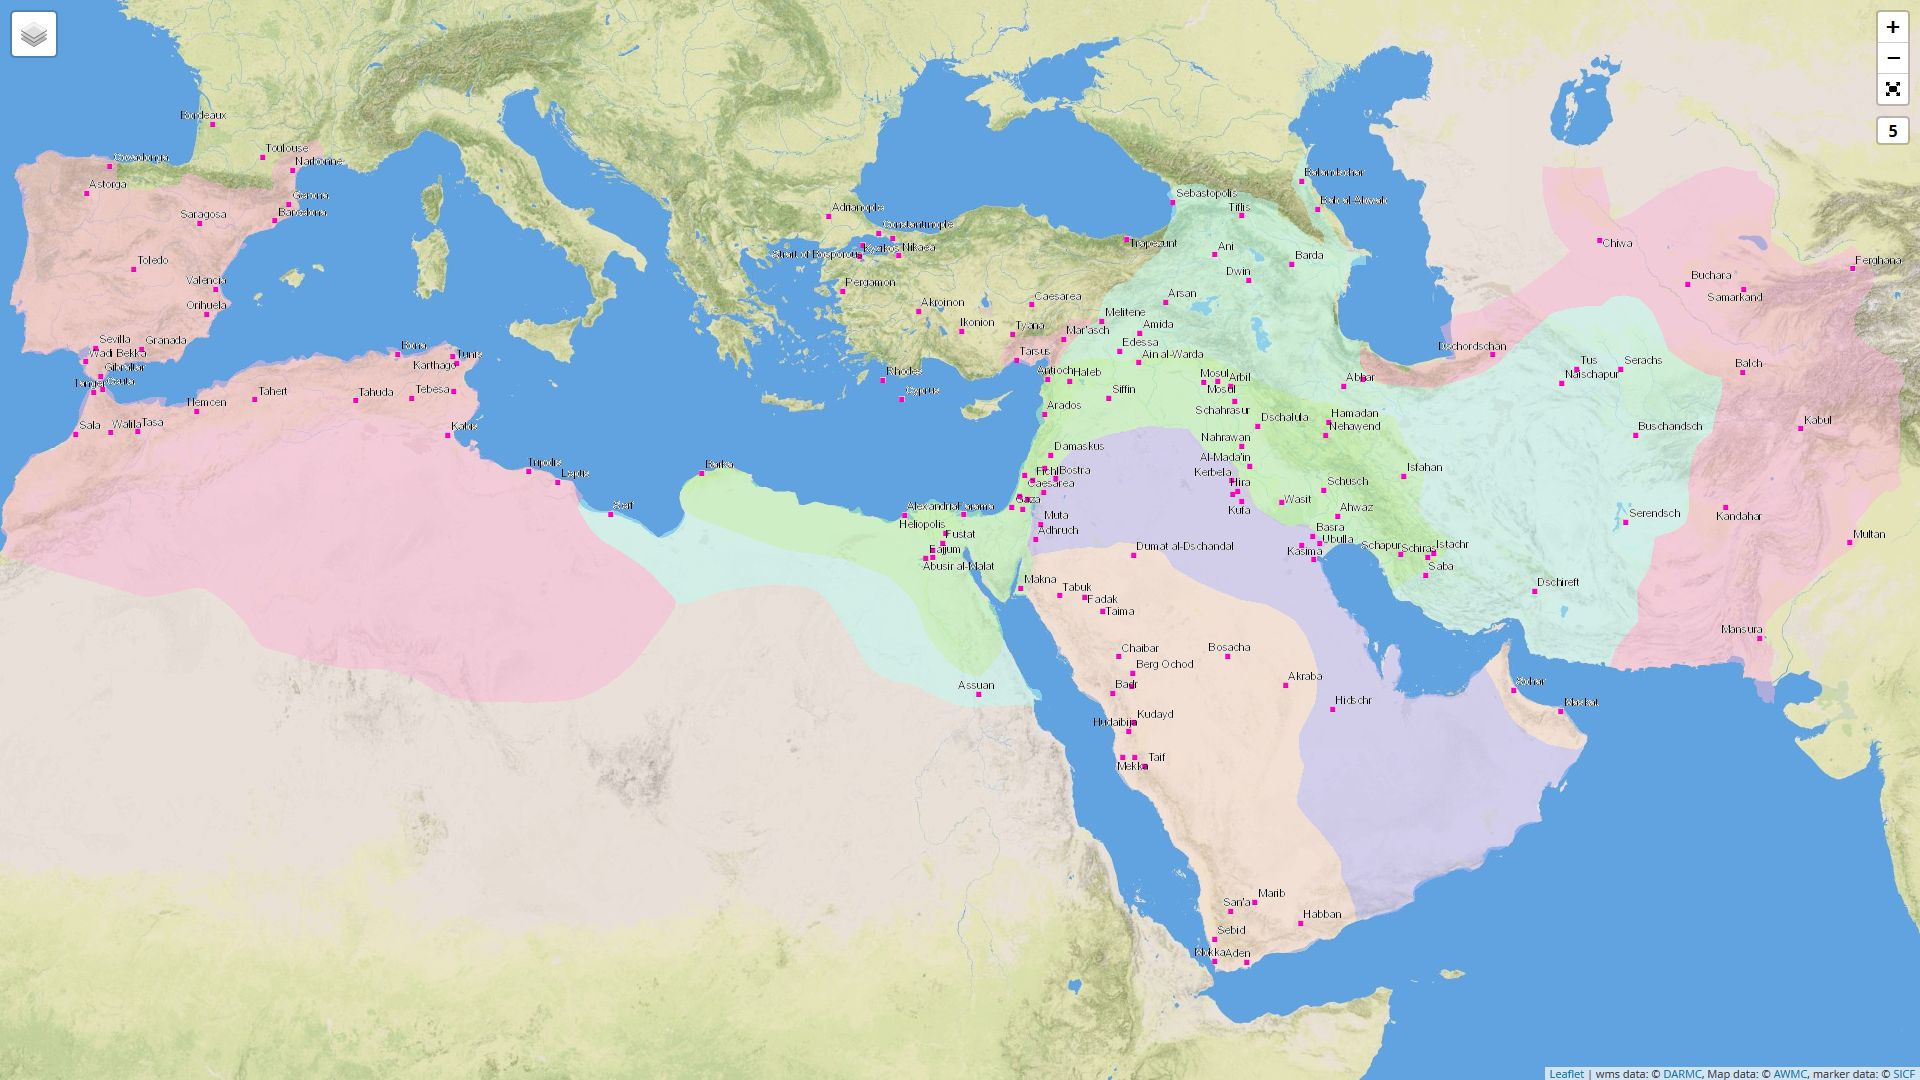 Digital Atlas of Roman and Medieval Civilizations: Karte mit islamischen Gebieten und Städten